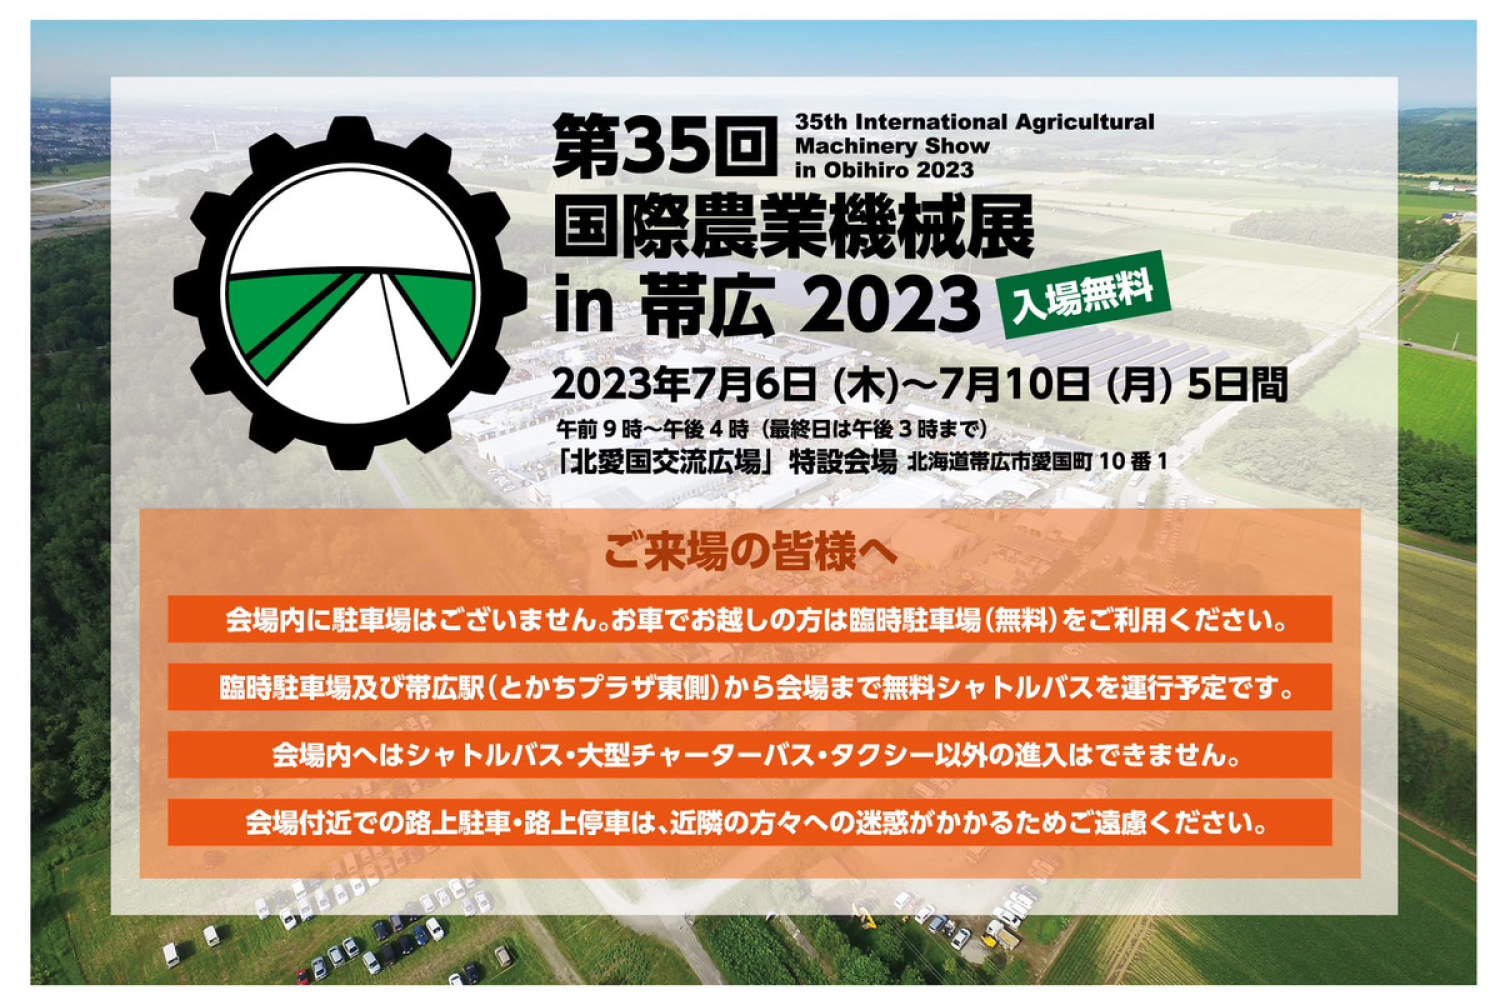 2023年国際農業機械展 in 帯広